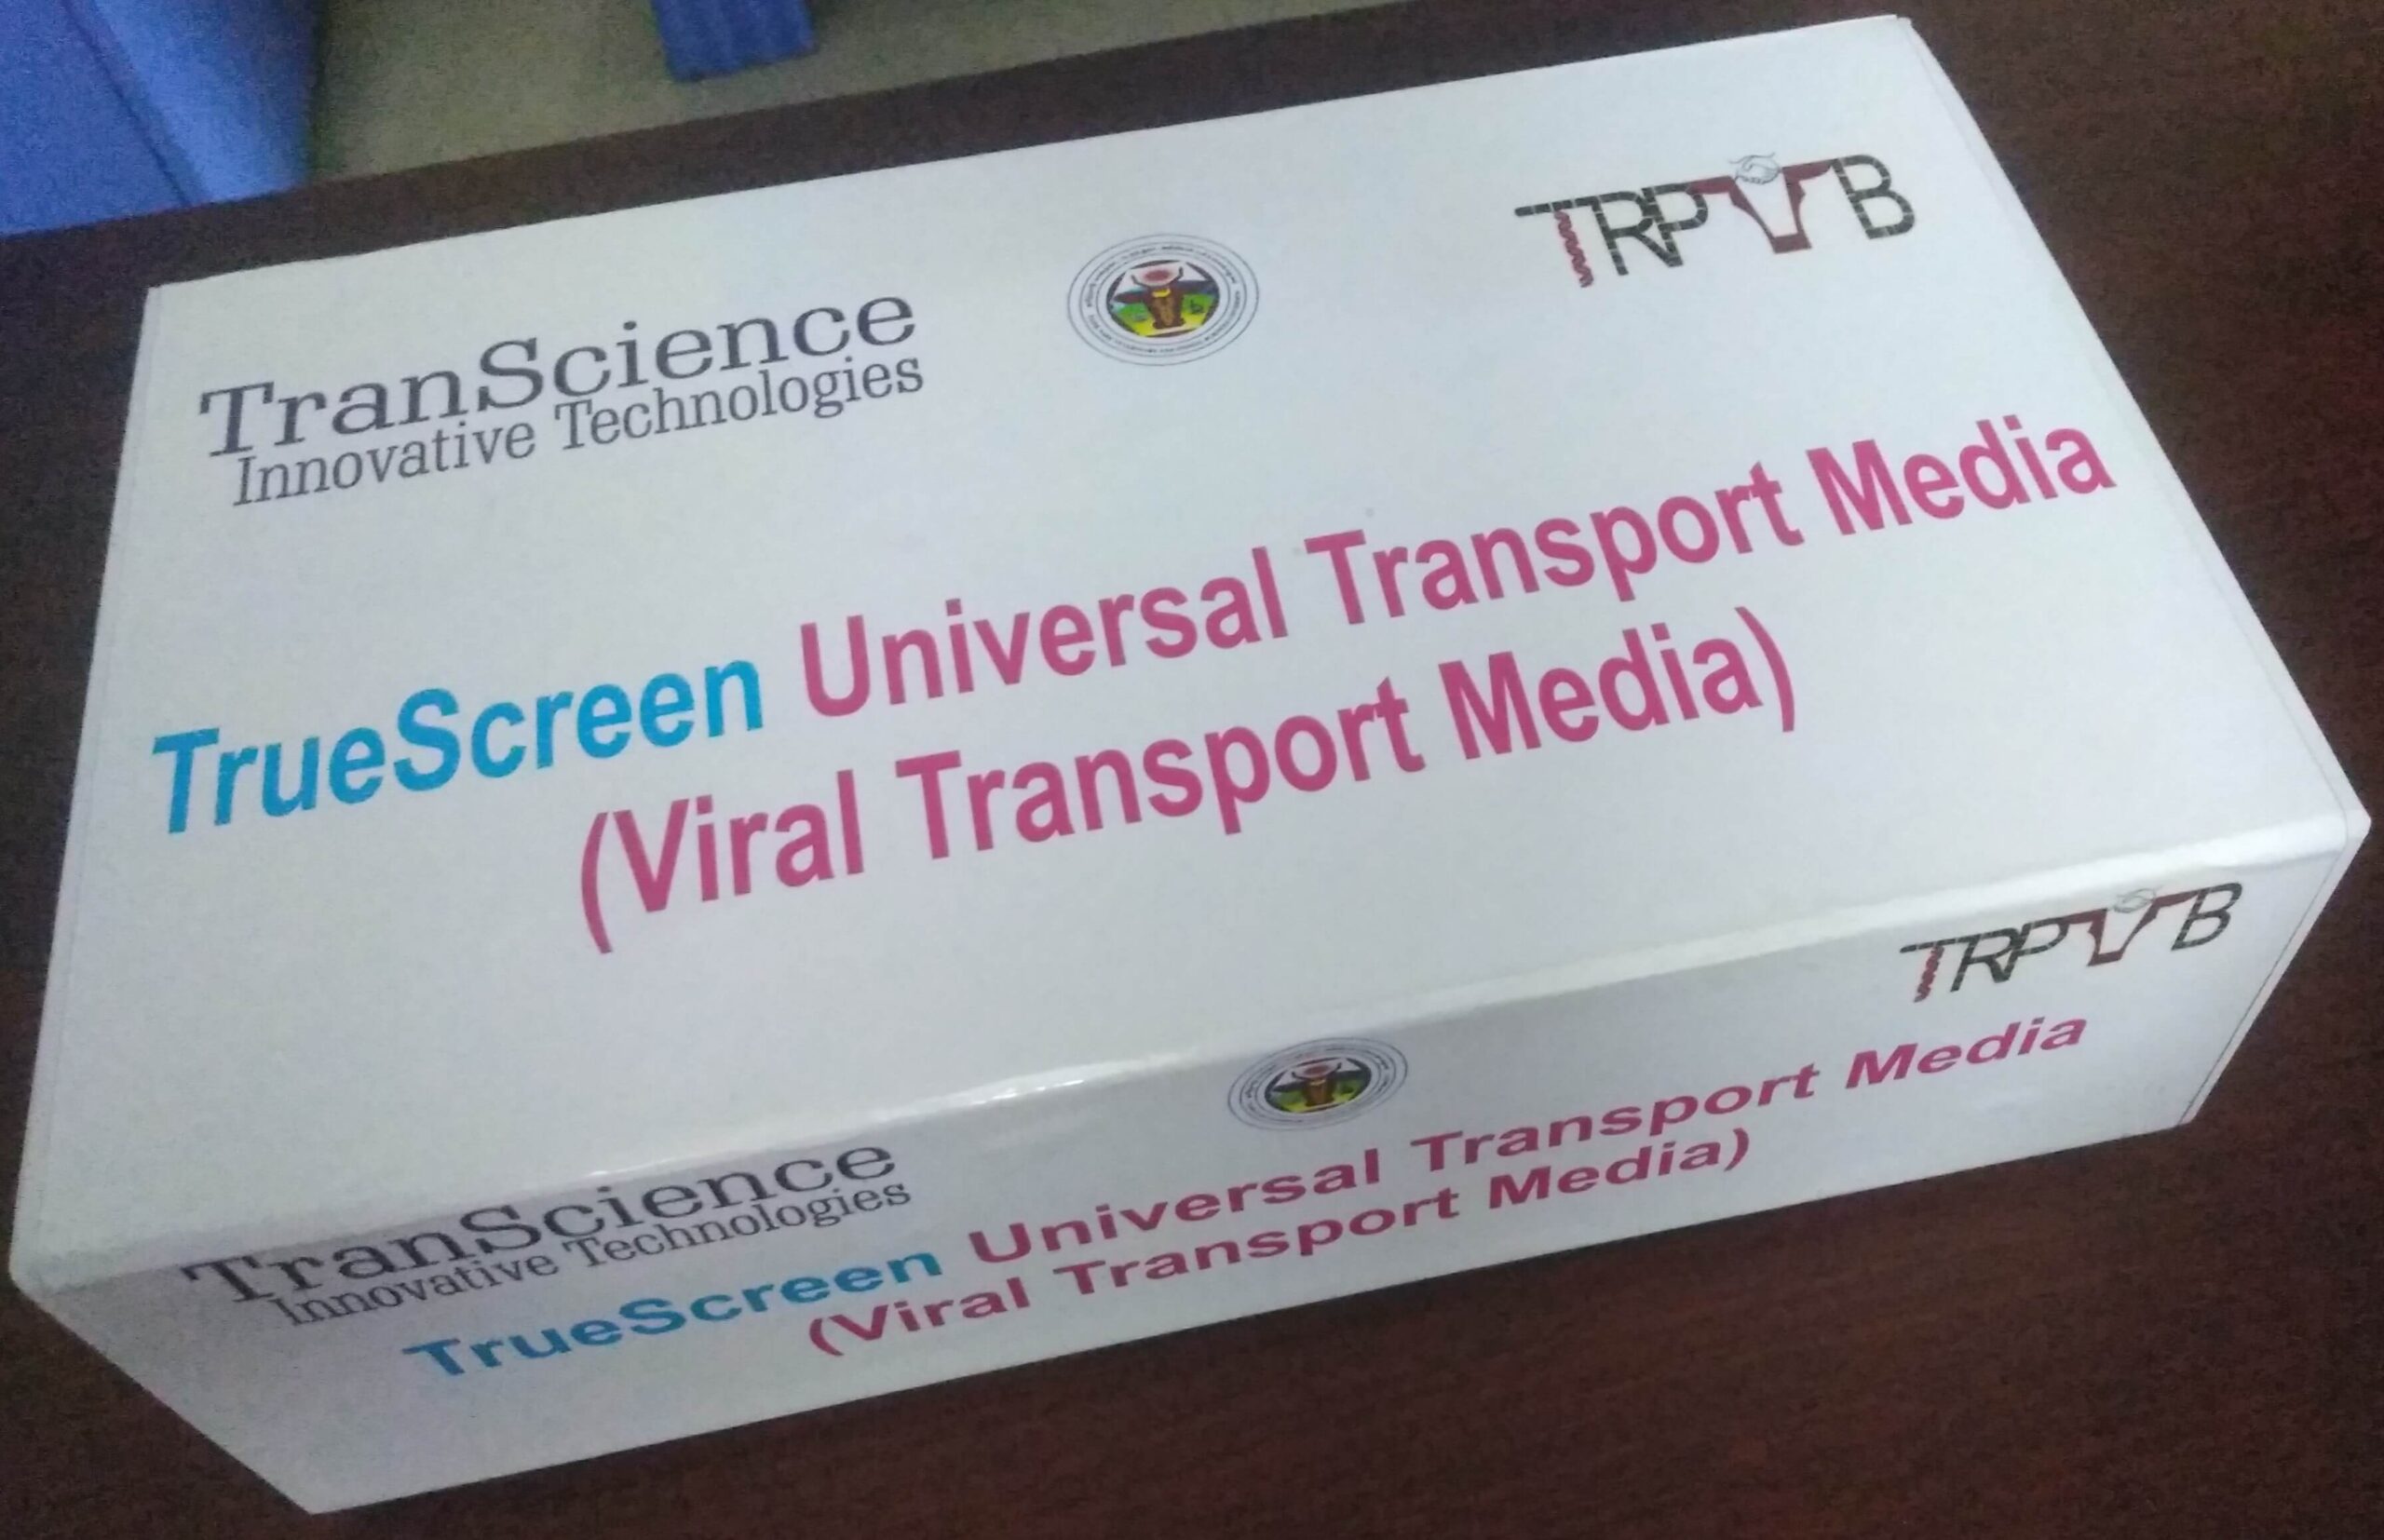 TrueScreen Universal Transport Media (Virus Transport Media (VTM))